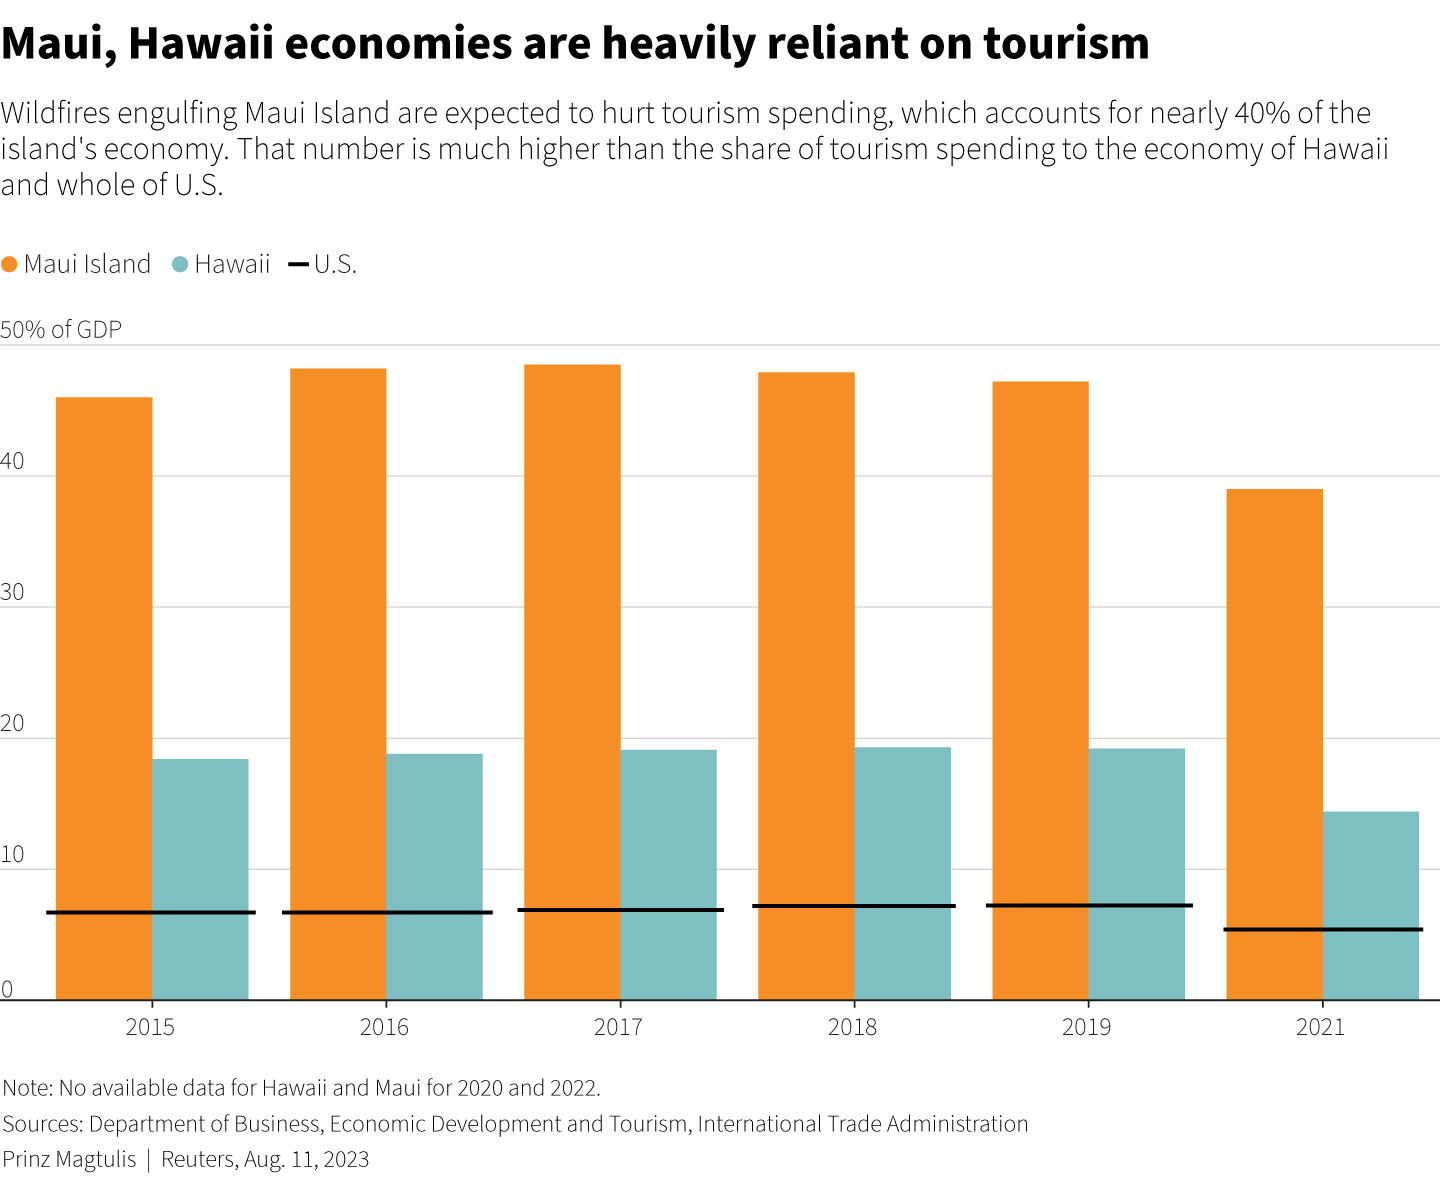 Das Balkendiagramm zeigt den Anteil der Besucherausgaben am BIP auf Maui und Hawaii, der viel höher ist als der für die gesamten USA